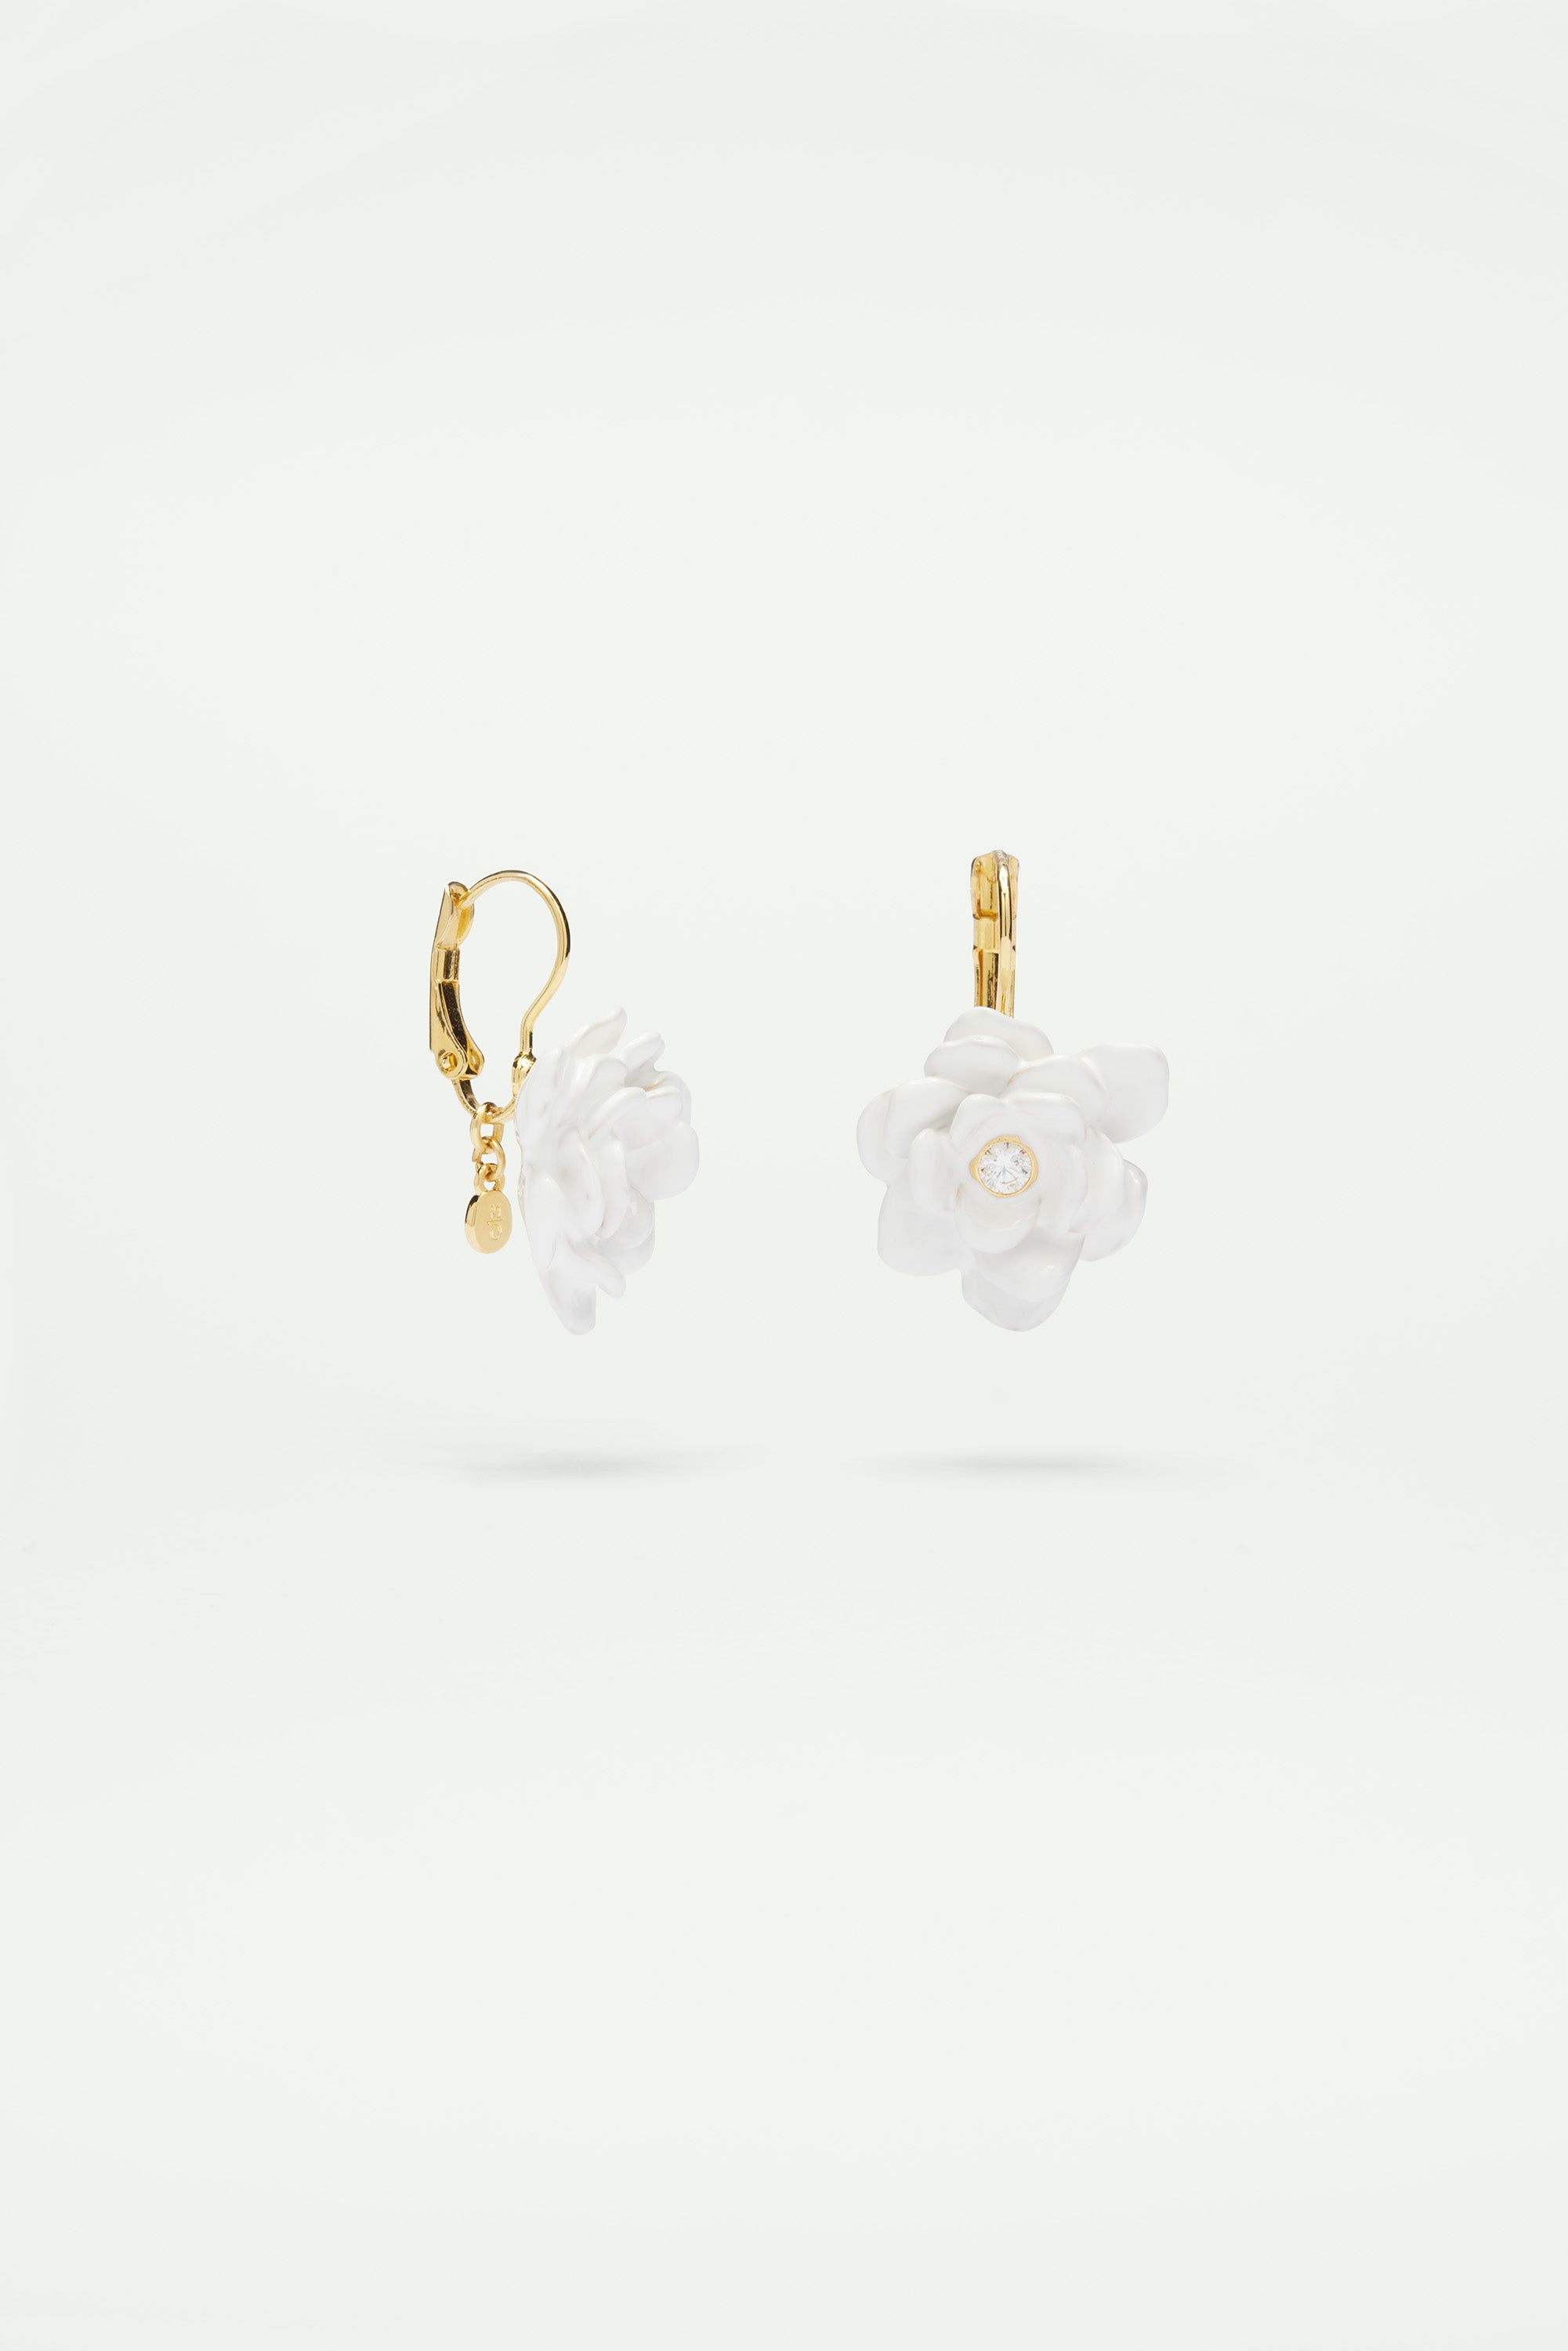 Gardenia and cut stone sleeper earrings